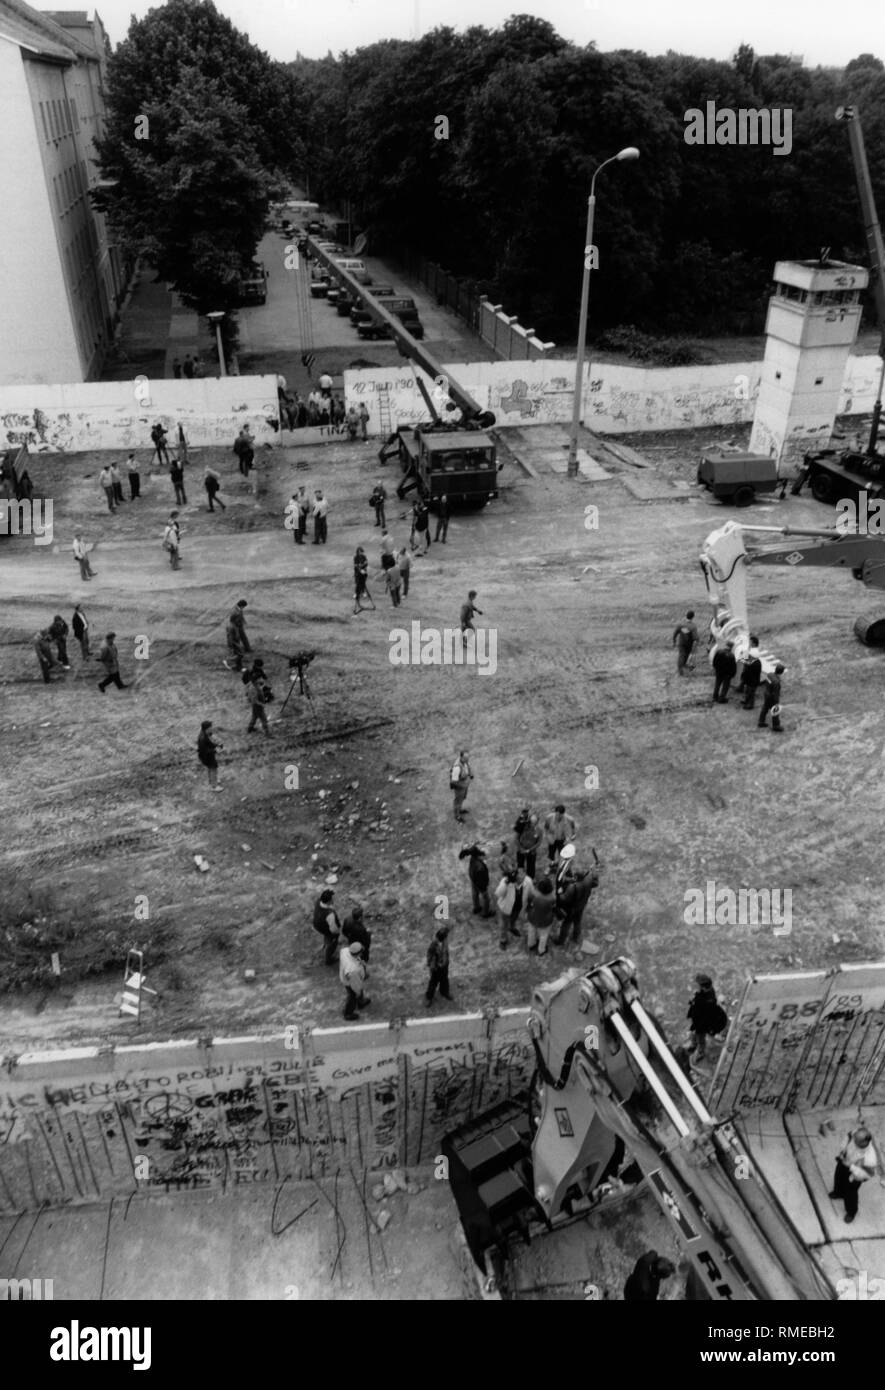 Abriss der Mauer Abschnitt an der Bernauer Straße, für mehrere Fluchtversuche während der Bau der Berliner Mauer 1961 bekannt. Stockfoto